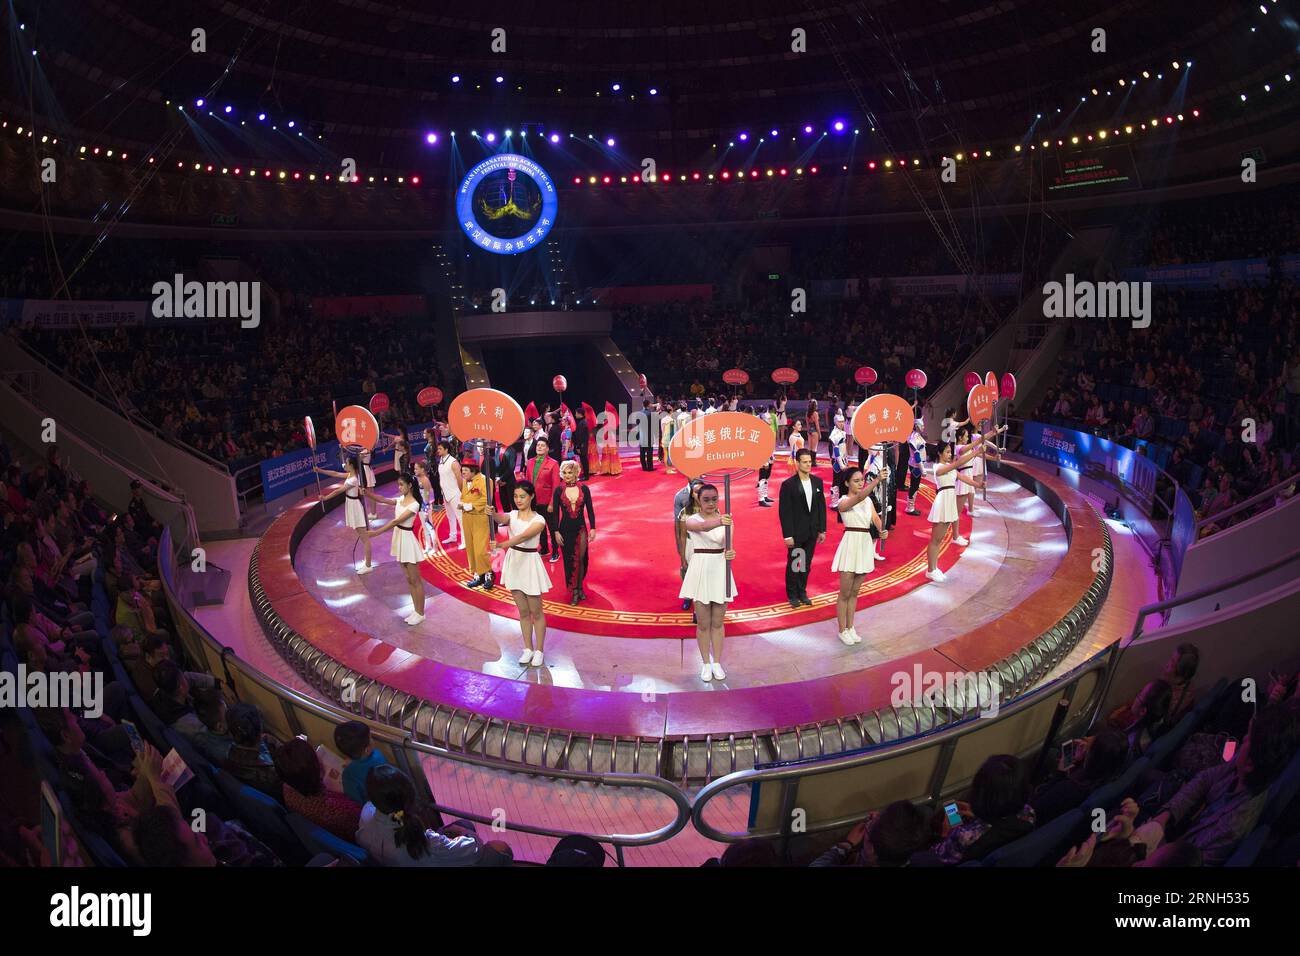 La cerimonia di apertura del dodicesimo Festival internazionale di arte Acrobatica cinese di Wuhan si tiene a Wuhan, capitale della provincia di Hubei della Cina centrale, il 28 ottobre 2016. Artisti provenienti da un totale di 13 paesi e regioni parteciperanno al festival di 6 giorni. ) (zhs) CHINA-WUHAN-ACROBATICS-FESTIVAL (CN) XiongxQi PUBLICATIONxNOTxINxCHN la cerimonia di apertura del dodicesimo Wuhan International Acrobatic Art Festival of China È Hero a Wuhan capitale della provincia di Hubei della Cina centrale OCT 28 2016 artisti provenienti da un totale di 13 paesi e regioni parteciperanno al 6 giorni Festival zhs China Wuhan Acrob Foto Stock